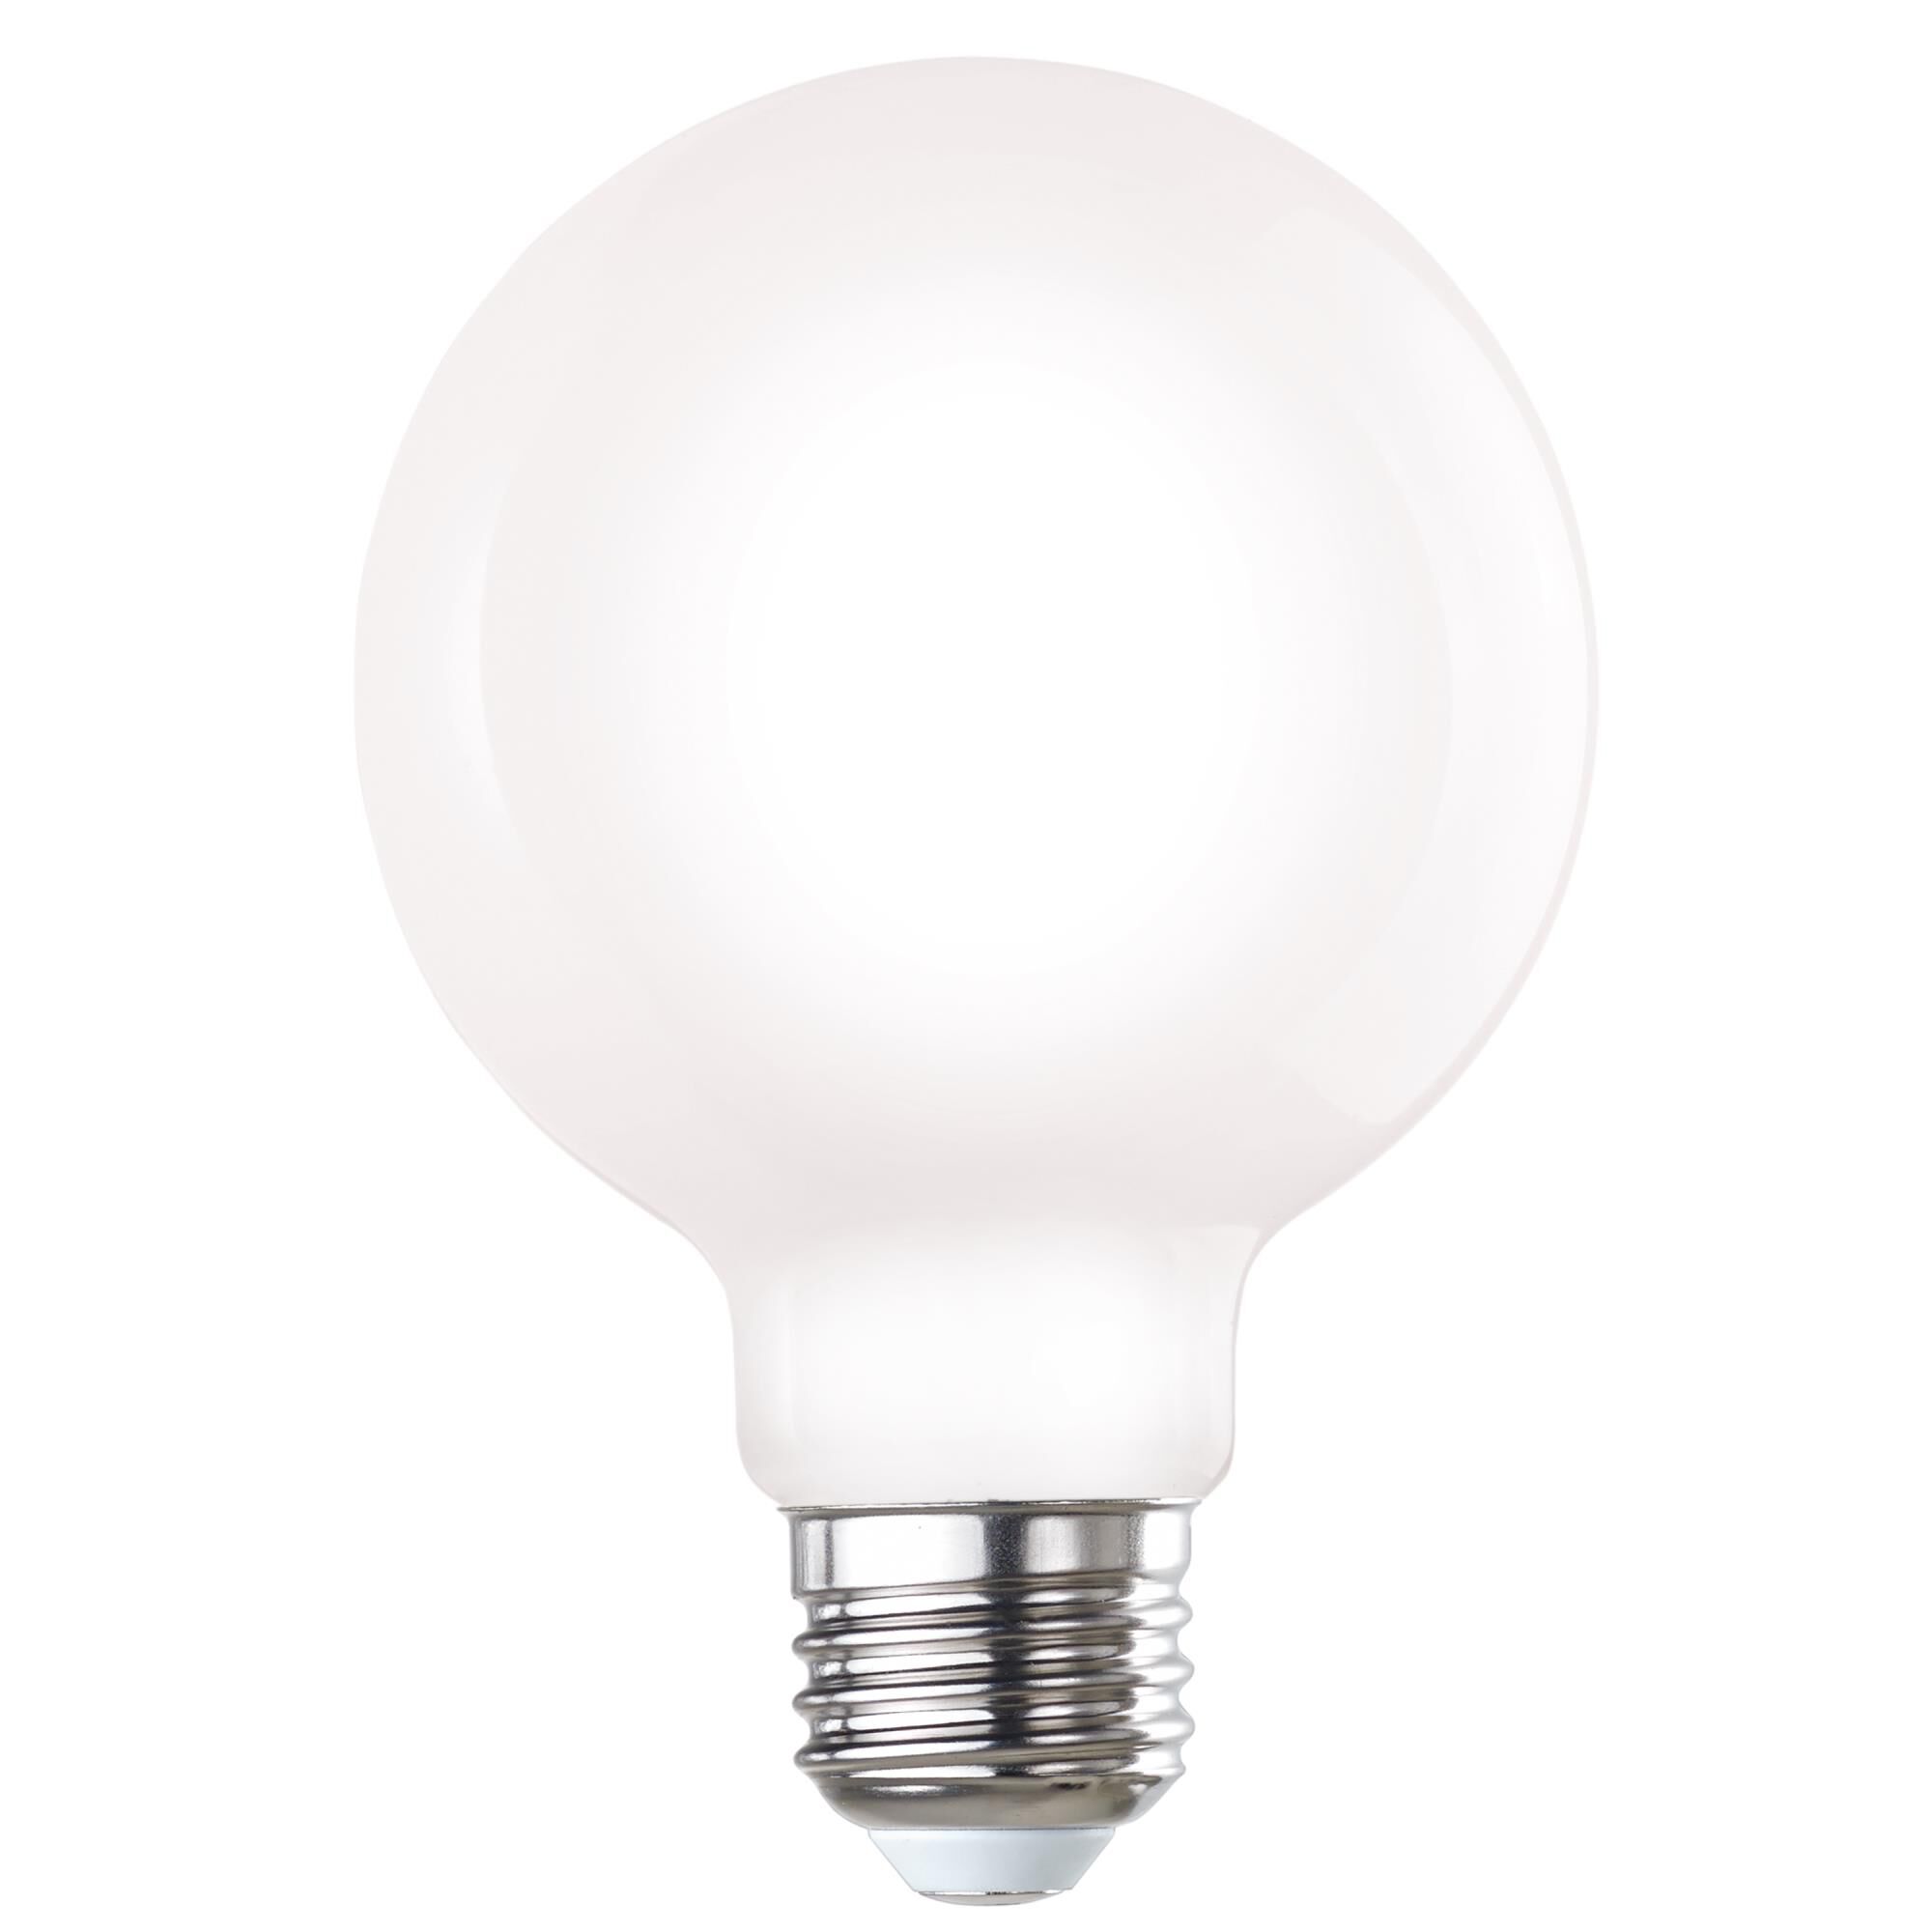 UPC 086162000072 product image for Bulbrite Dimmable 7 Watt 3000K G25 LED Light Bulb - LED7G25/30K/FIL/M/D/B-8PK | upcitemdb.com